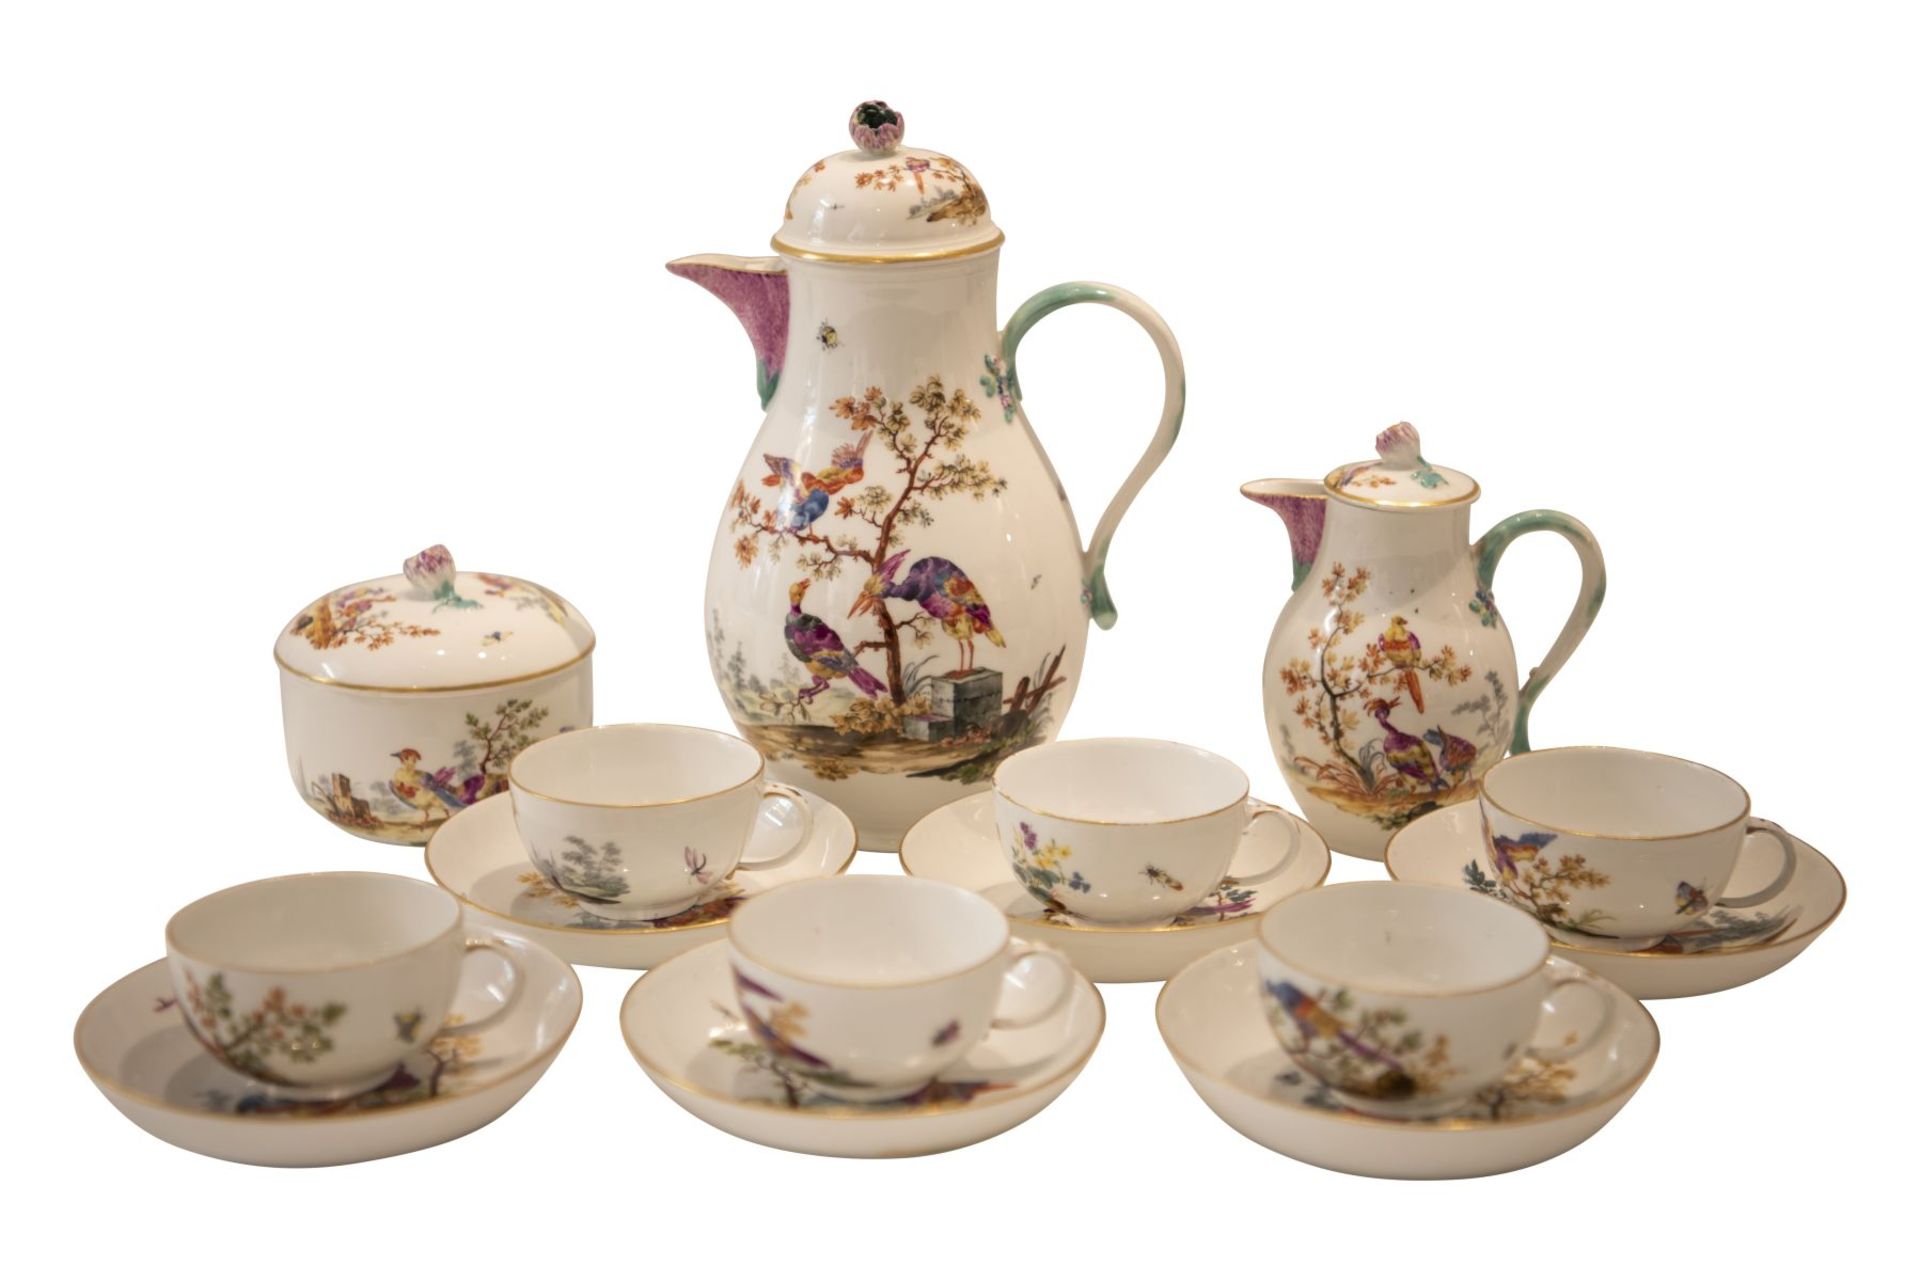 9 piece porcelain service Meissen around 1763